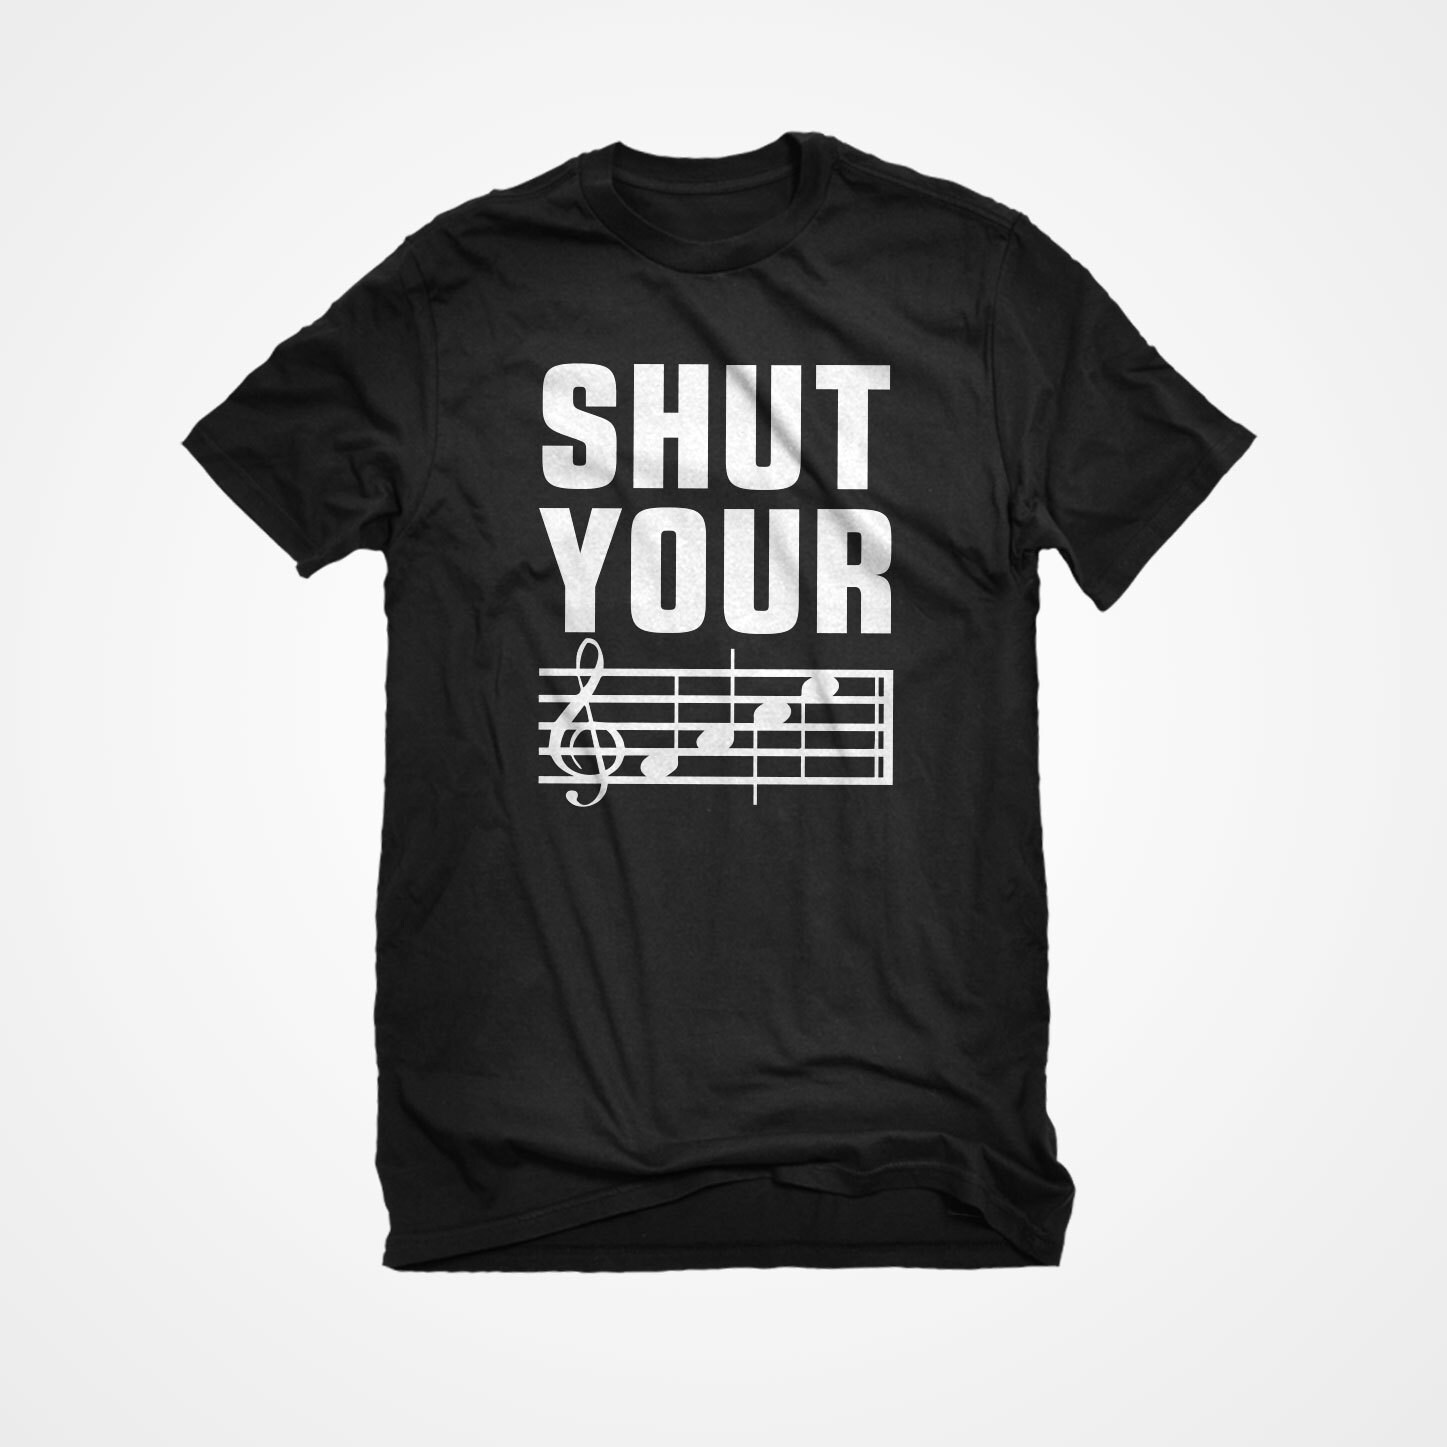 T-Shirt Shut Your Face Unisex Adult Cotton Men's by IndicaPlateau